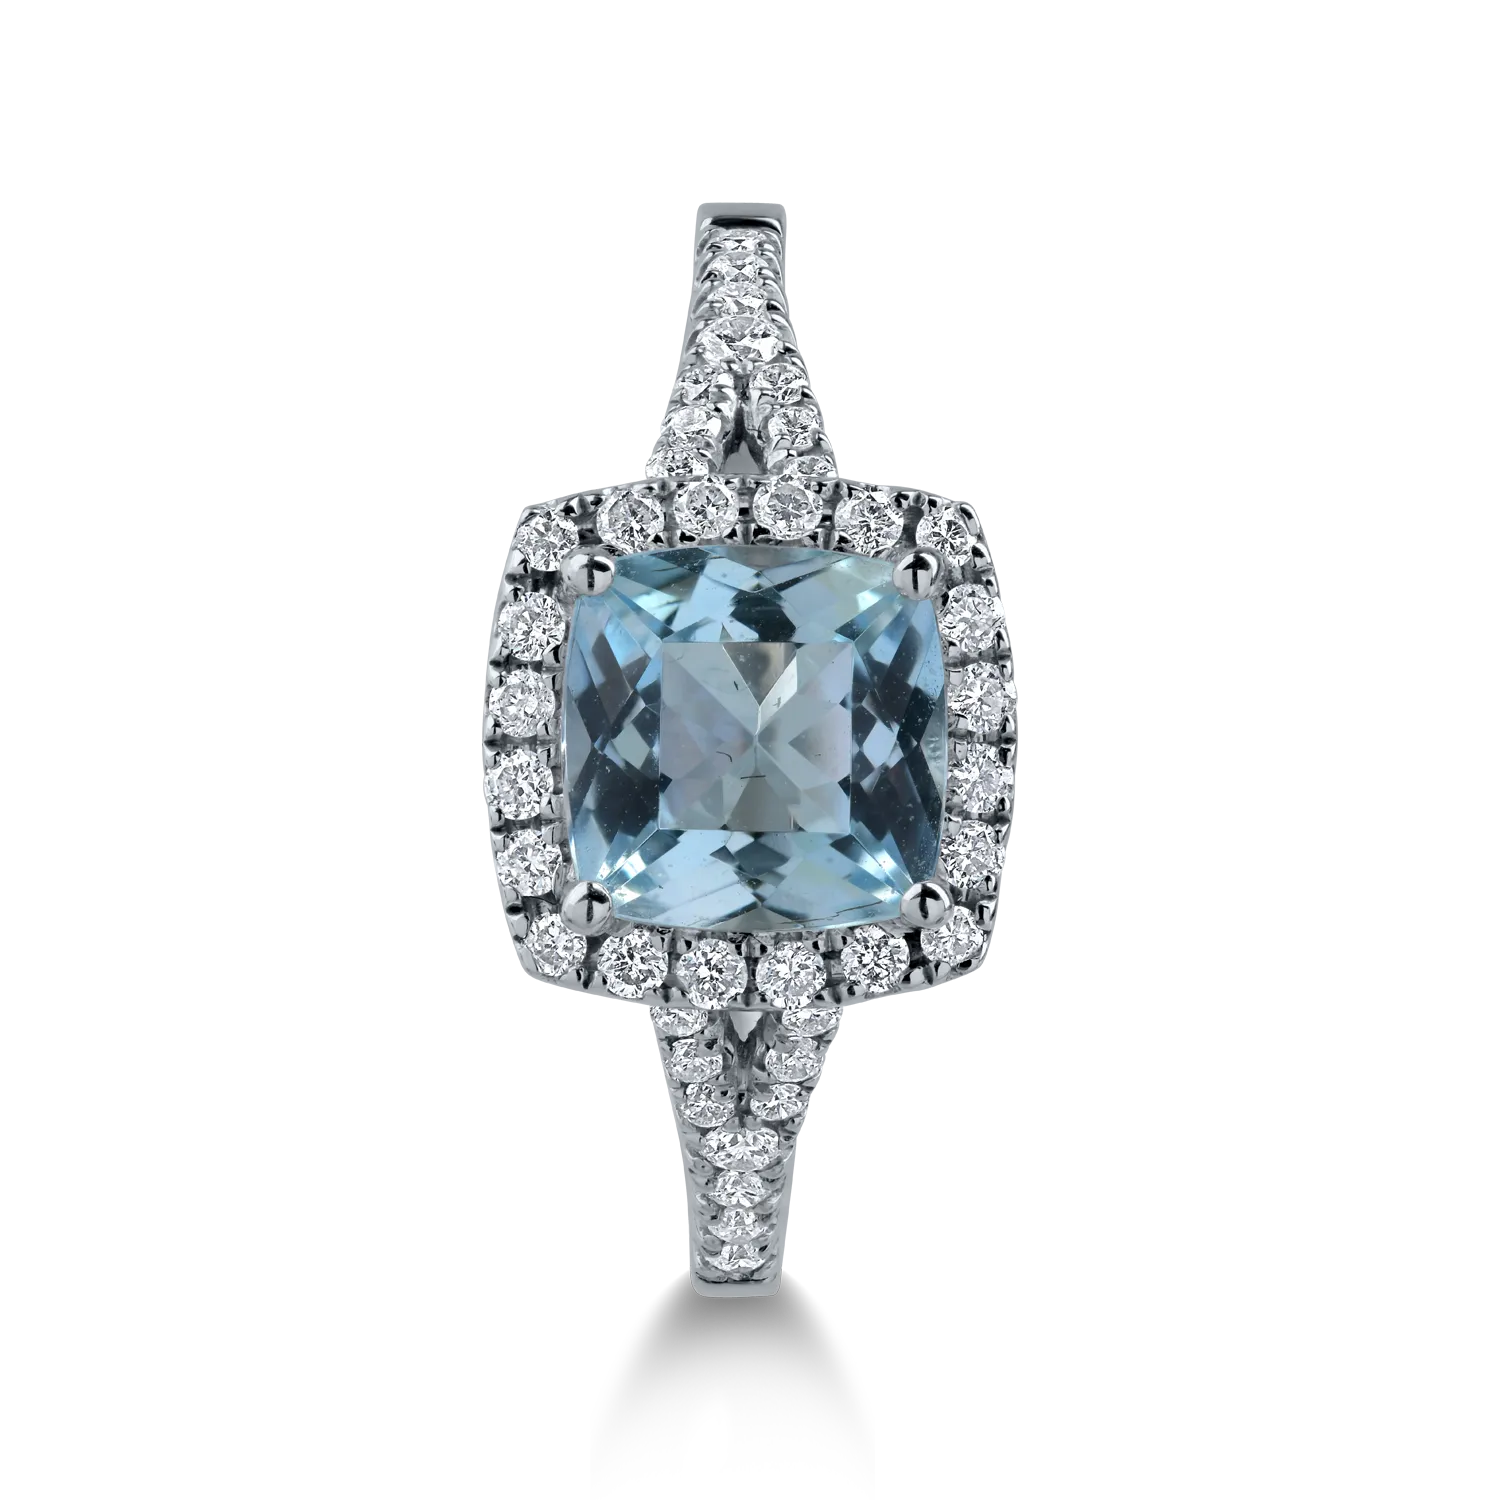 White gold ring with 1.28ct aquamarine and 0.27ct diamonds